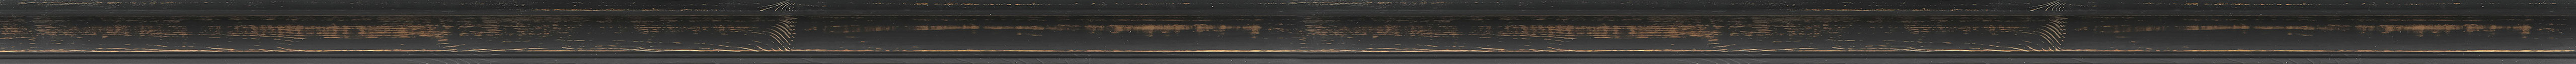 Μαύρη ντεκαπέ κορνίζα frame